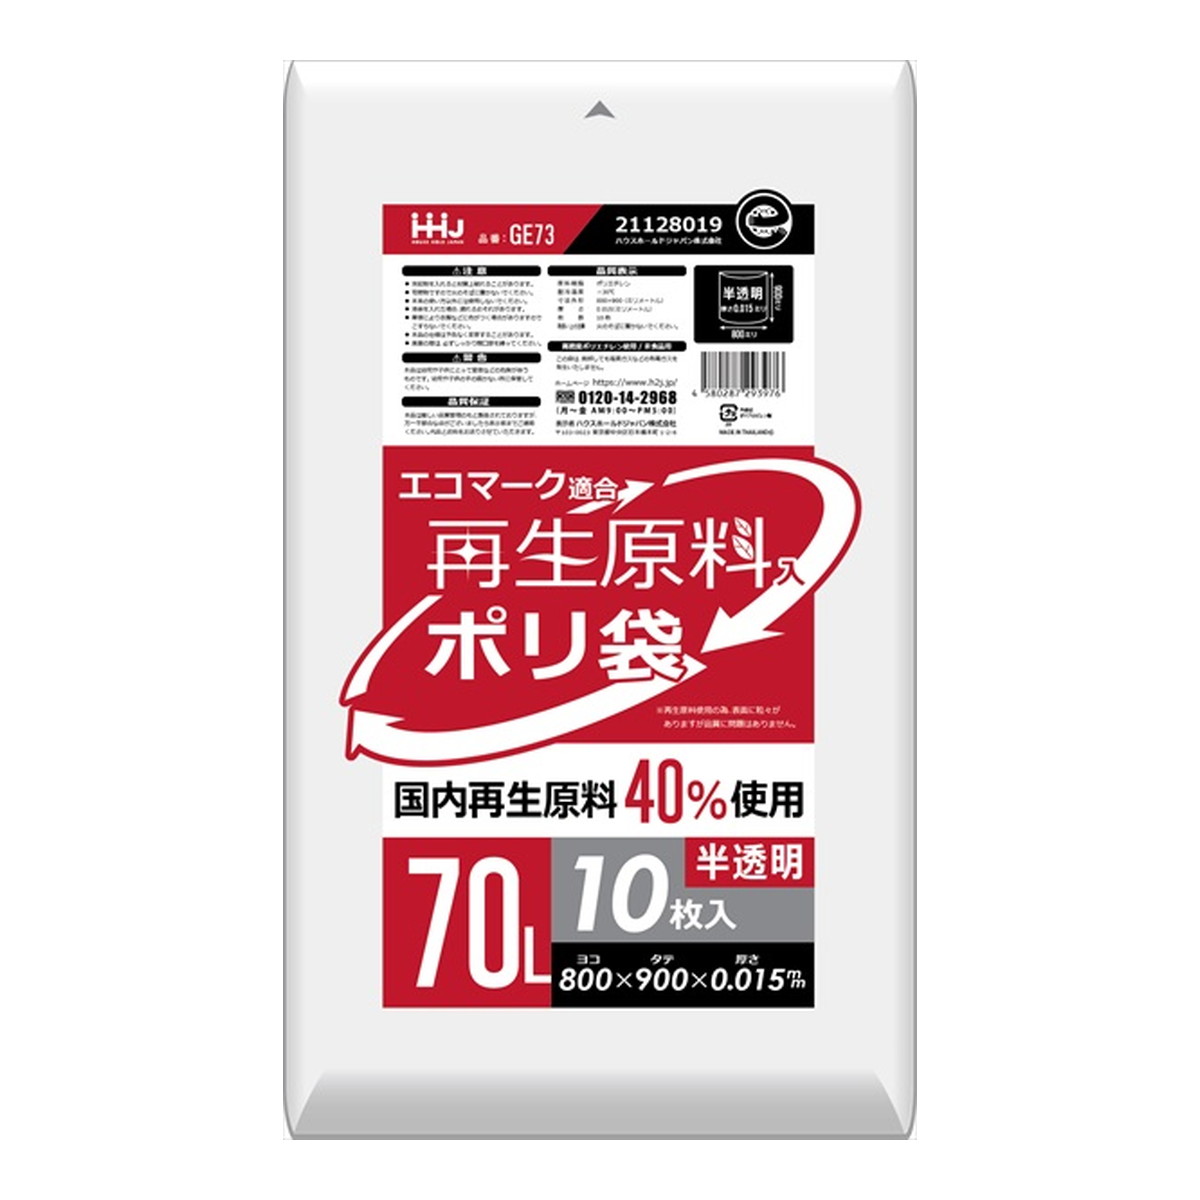 【令和・早い者勝ちセール】ハウスホールドジャパン GE73 再生エコマーク 袋 半透明 70L 10枚入